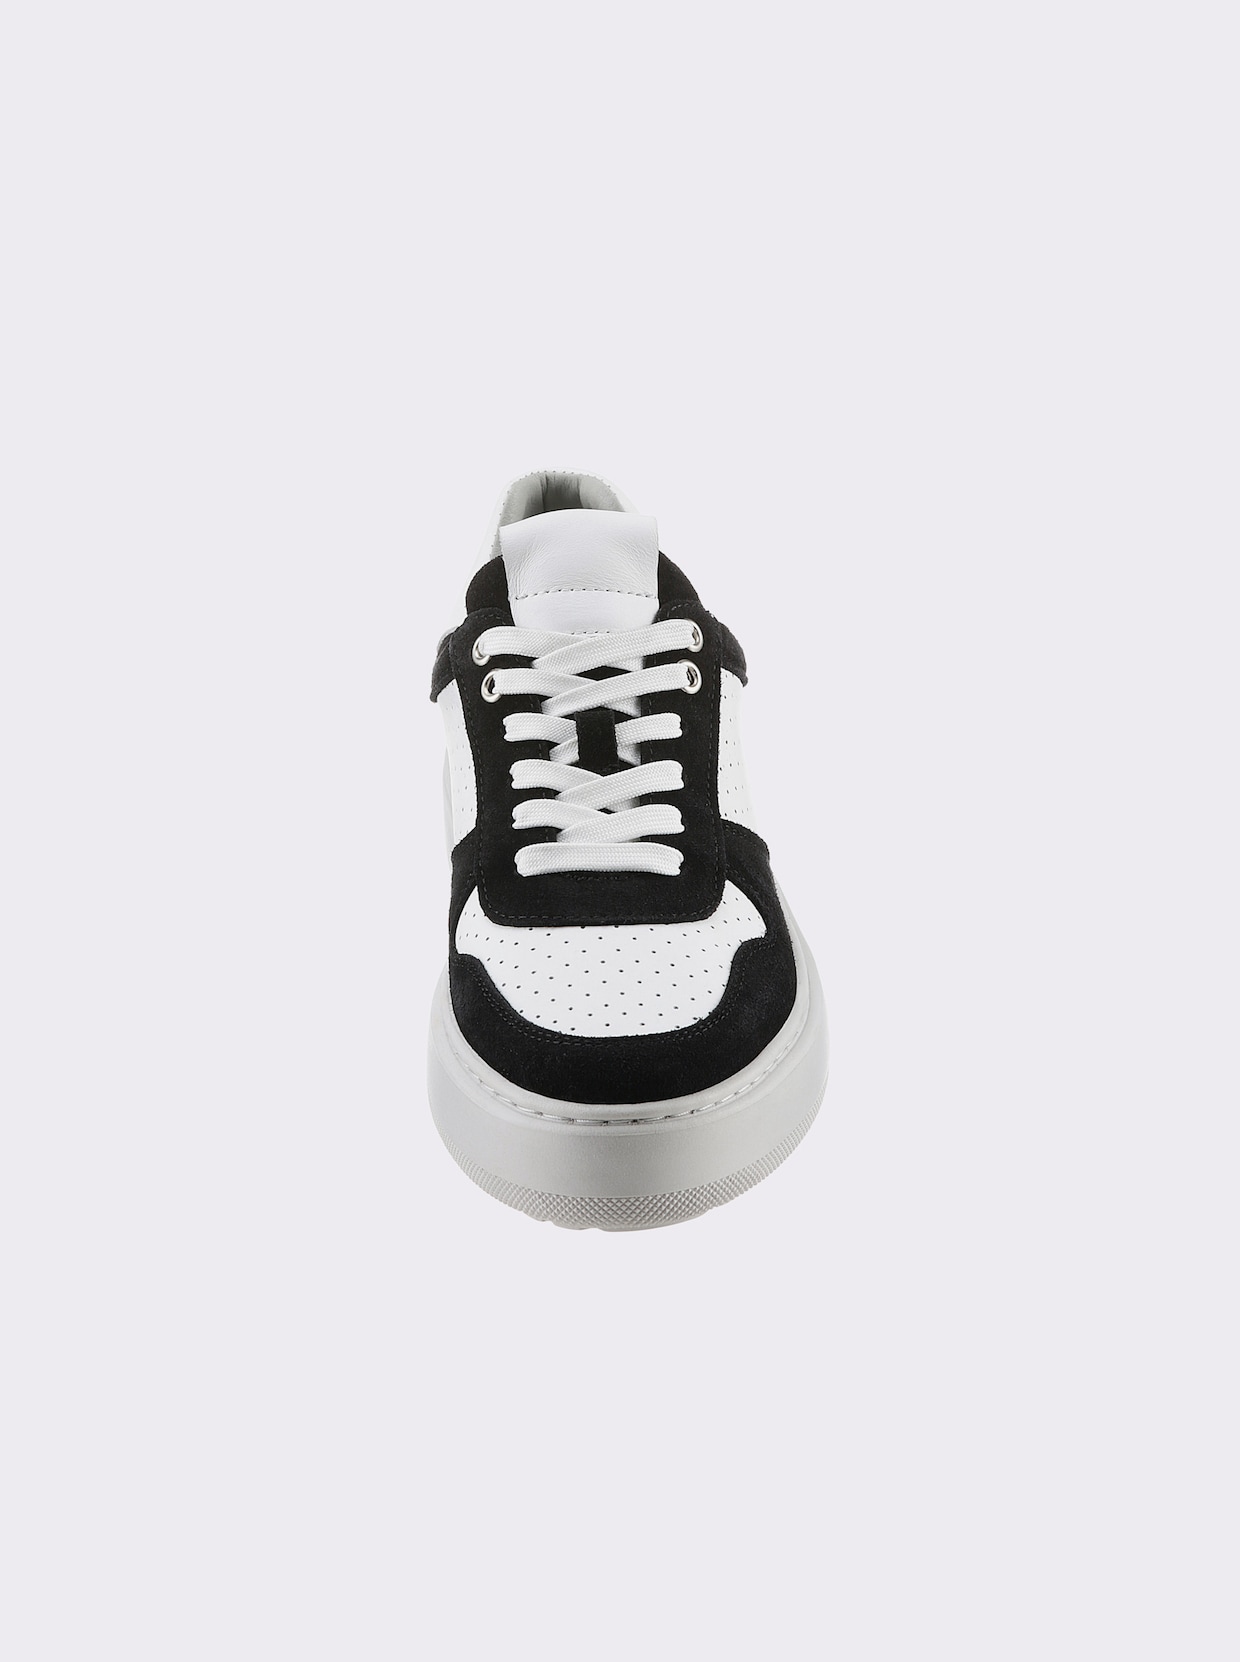 heine Sneaker - schwarz-weiß